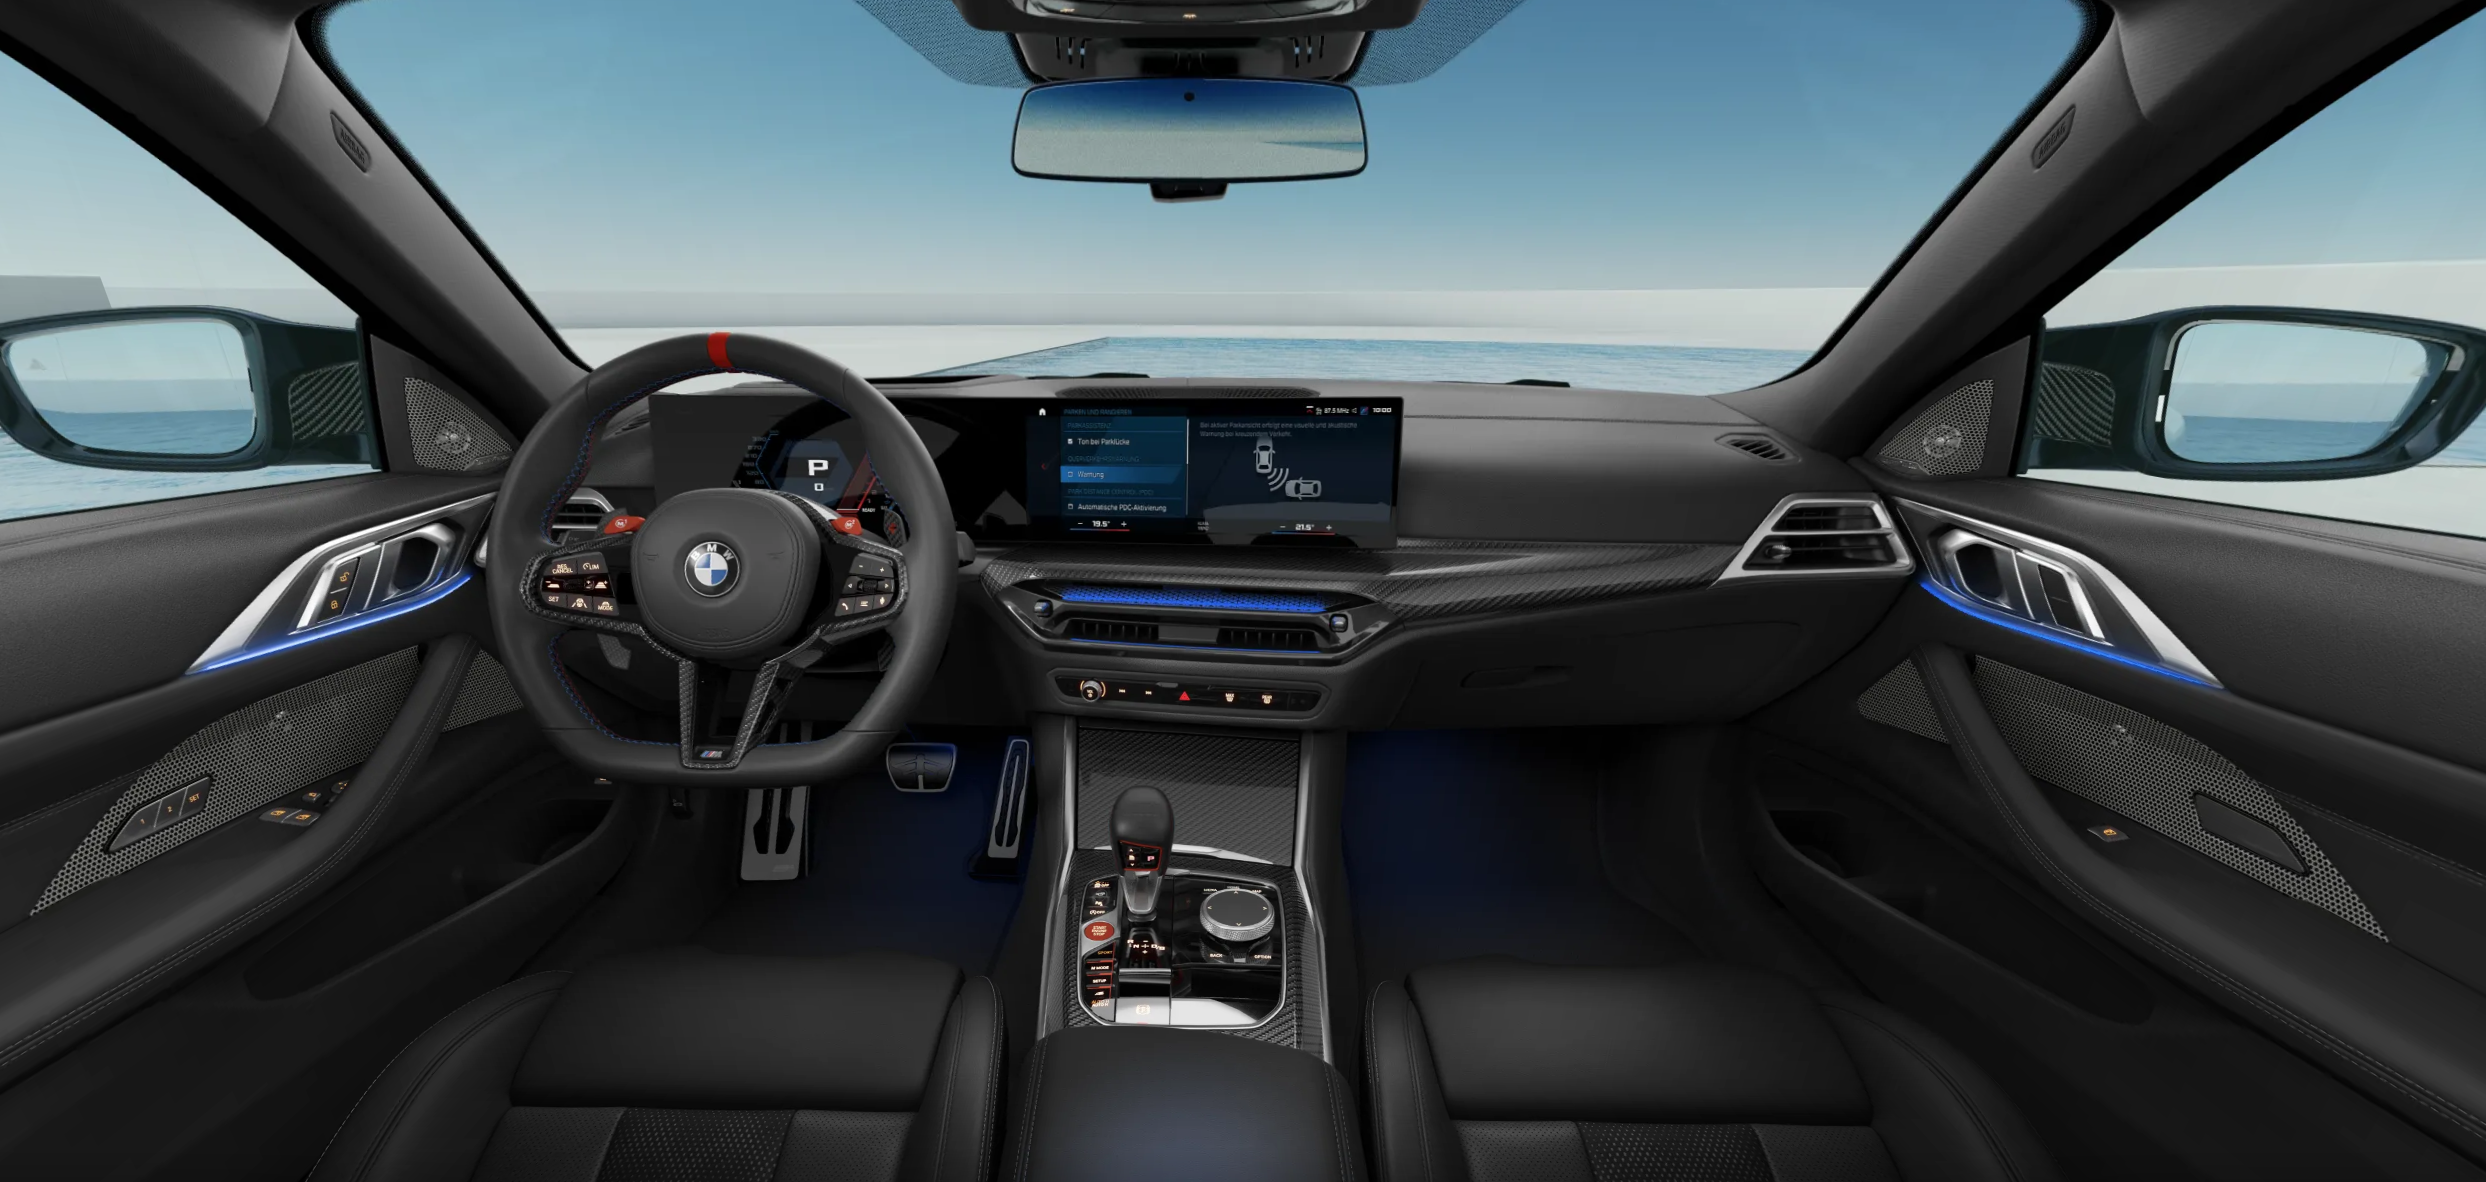 BMW M4 Competition xDrive coupé | FACELIFT | nové auto k objednání do výroby | super sport coupé | maximální výbava | nákup online | auto eshop | virtuální autosalon AUTOiBUY.com